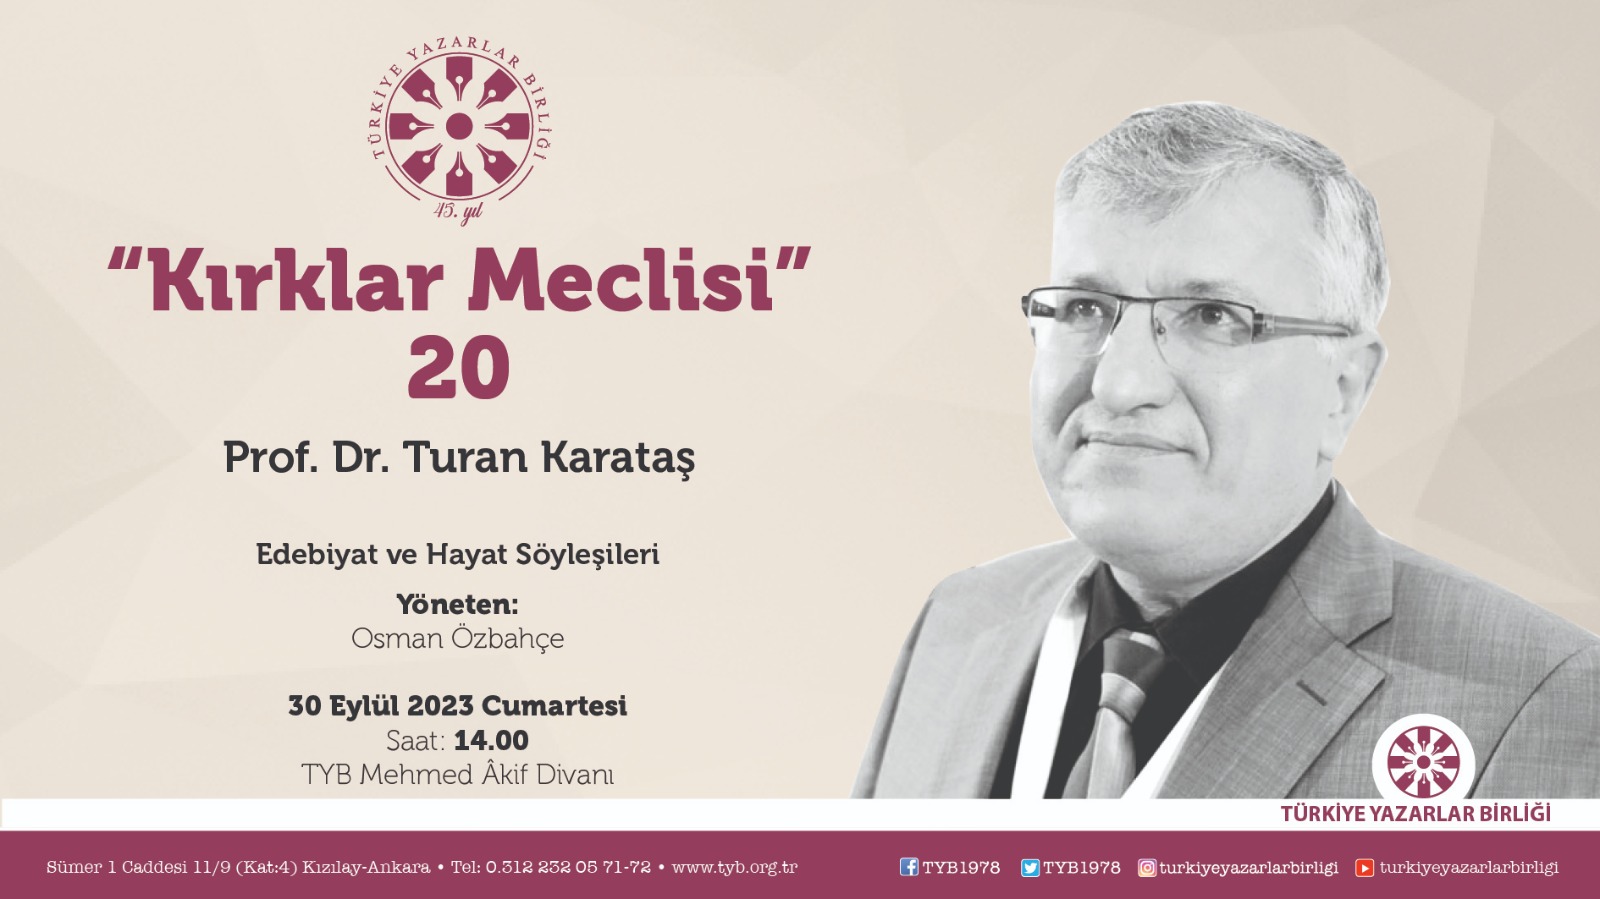 Turan Karataş "Kırklar Meclisi"nde konuşacak